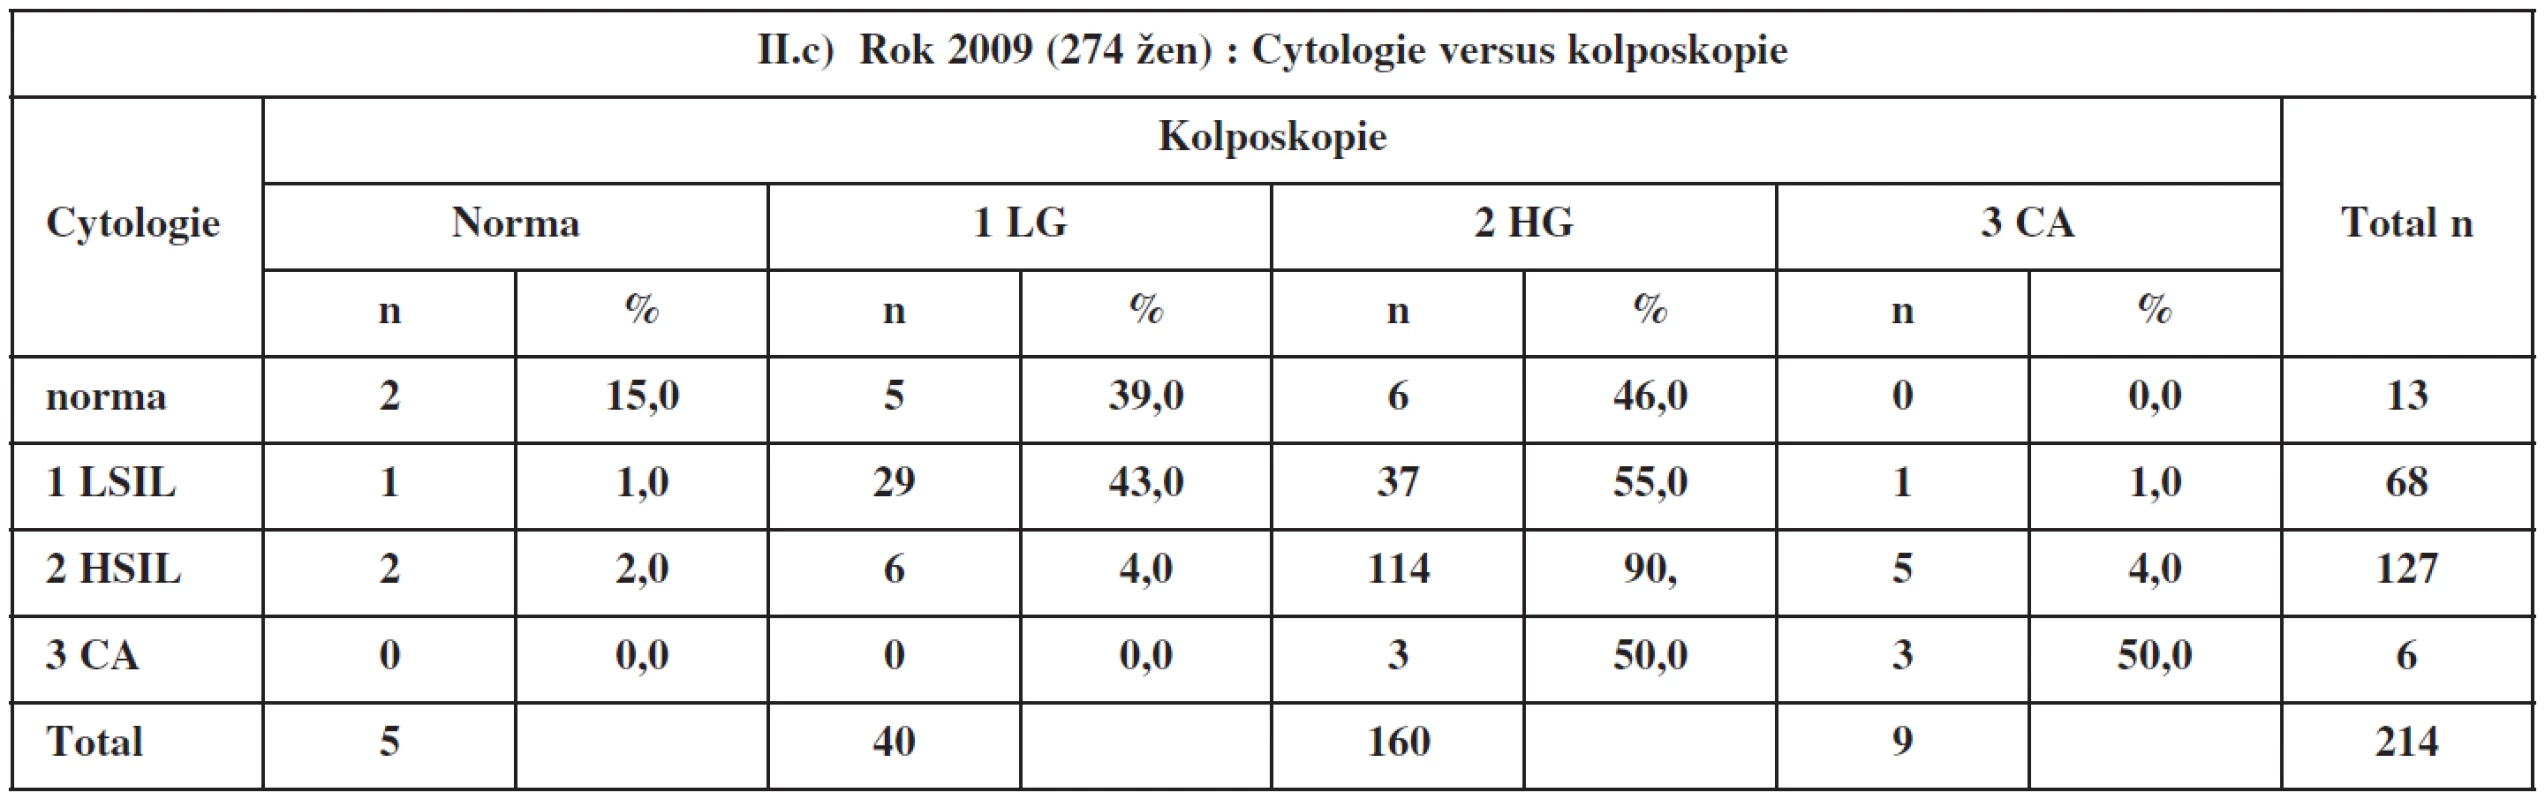 Cytologie a kolposkopie v roce 2009